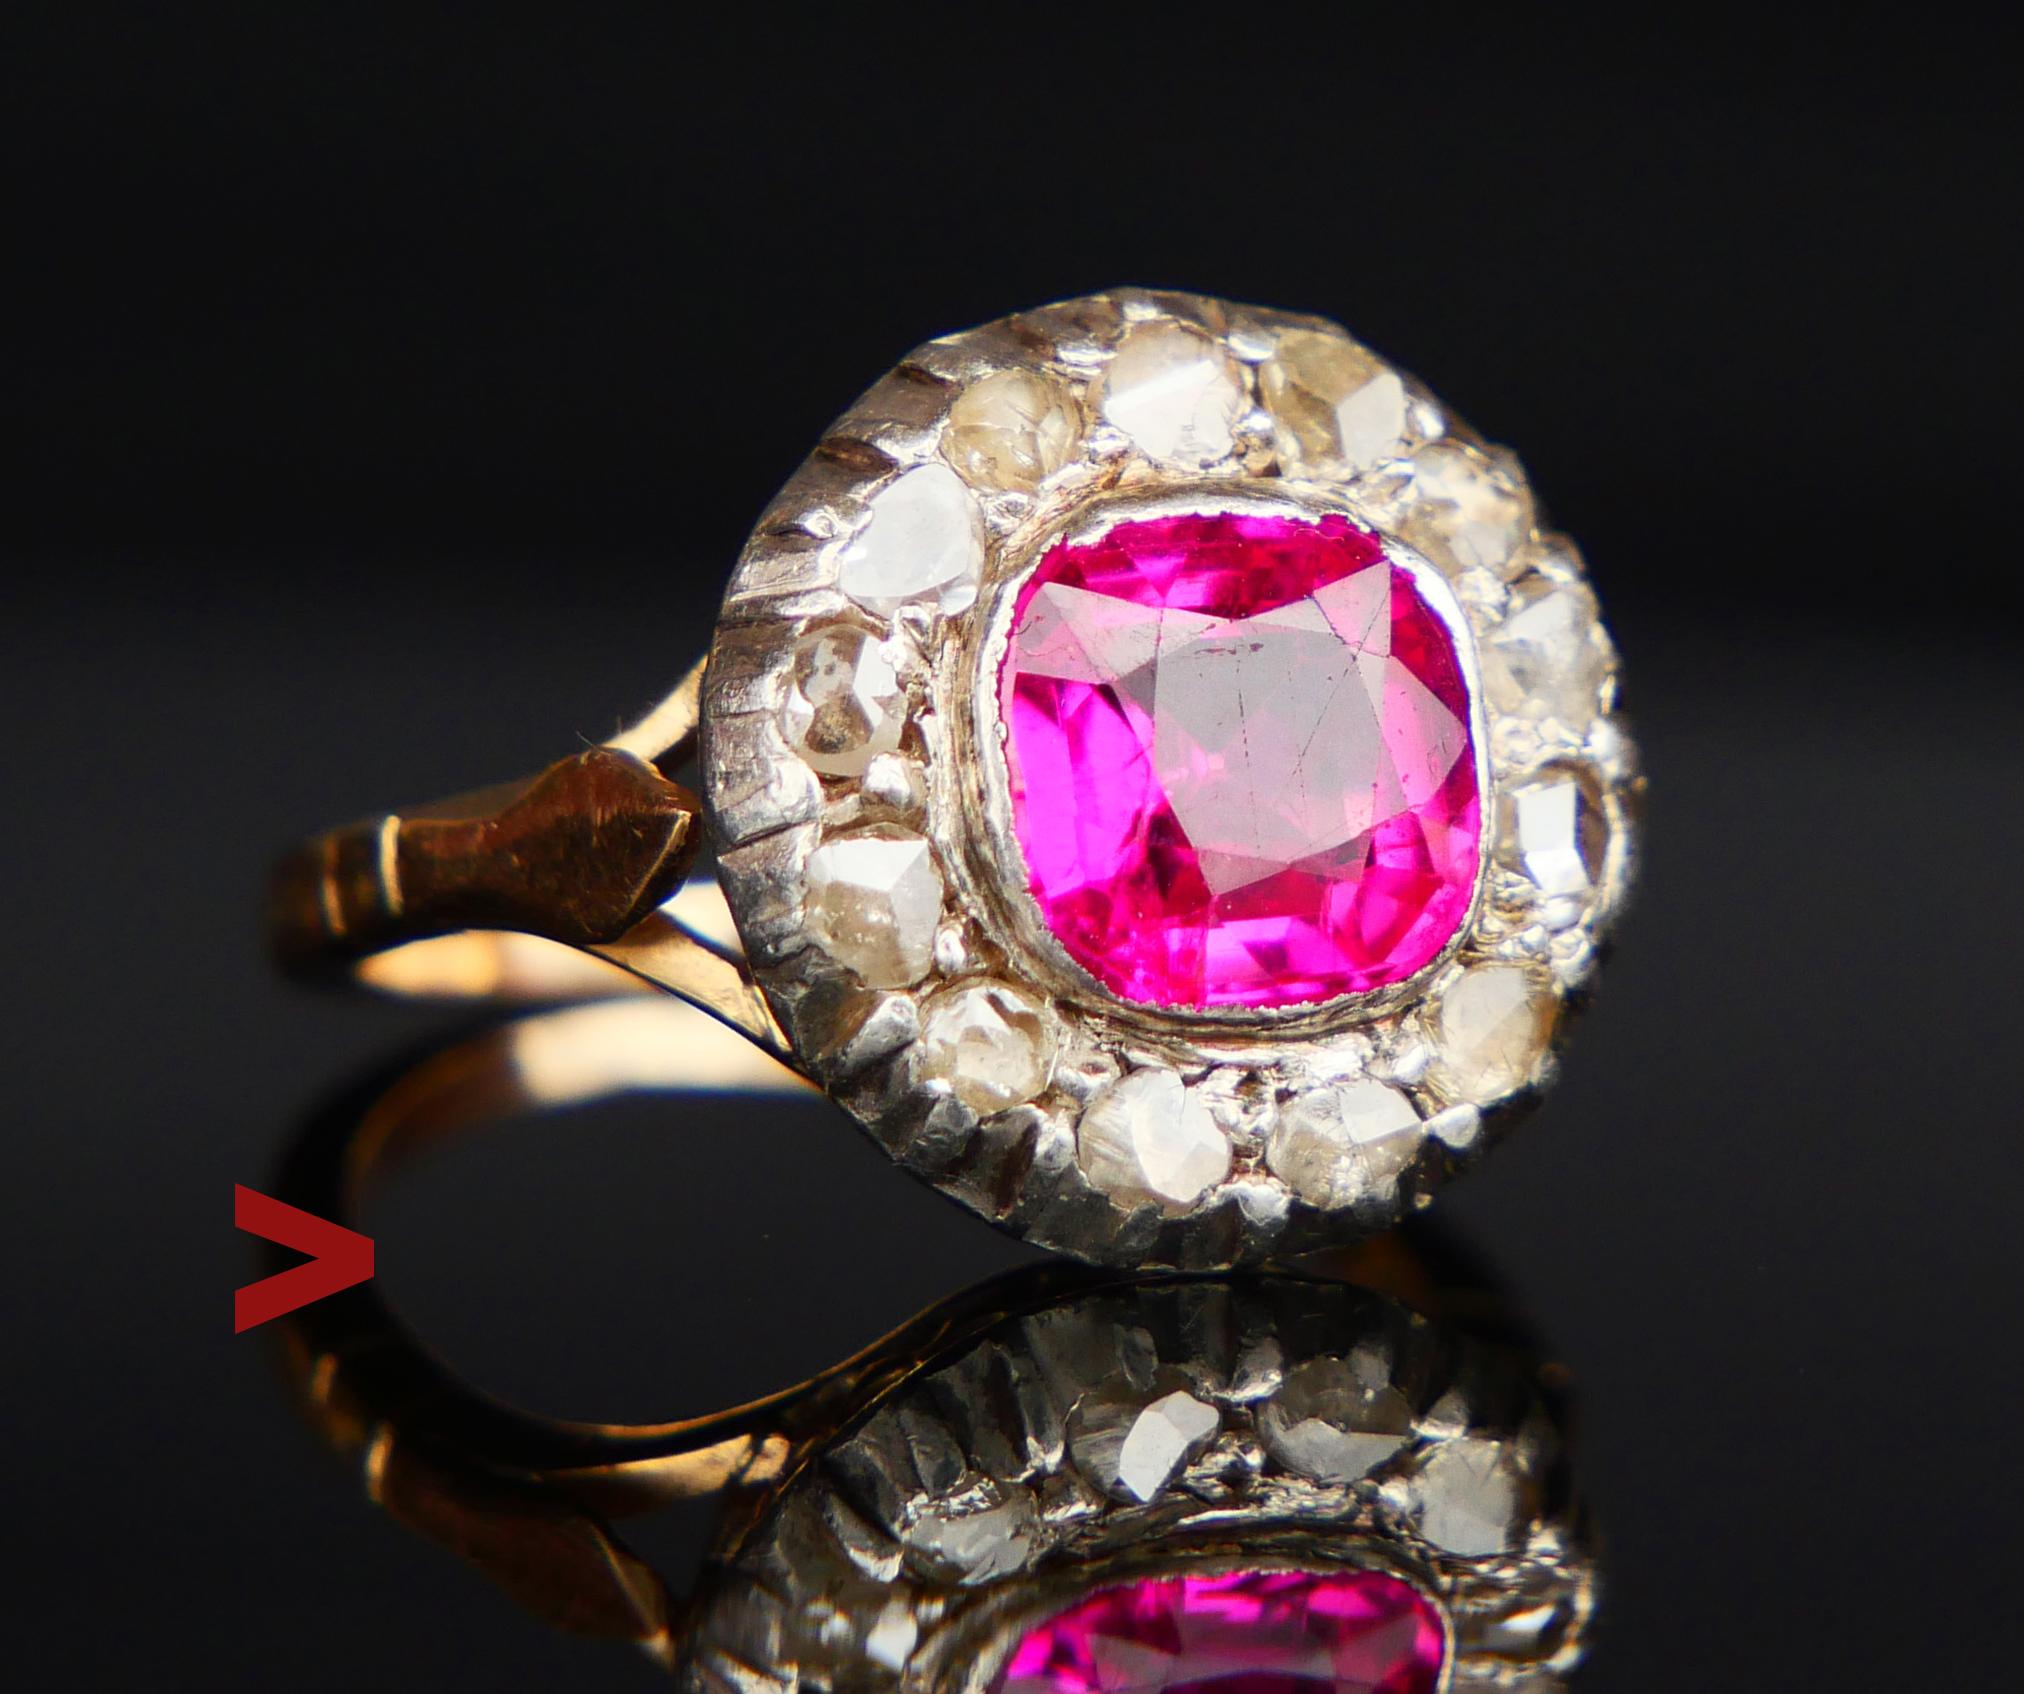 Halo-Ring aus den 1920er-1930er Jahren mit Rubin und 13 Diamanten im Rosenschliff. Nicht gestempelt, getestet 18K.

Krone mit Silber / oder Weißgold oben auf massivem 18K Gelbgold misst Ø 14 mm x 6 mm tief ... Lünettenfassung Rubin, wahrscheinlich